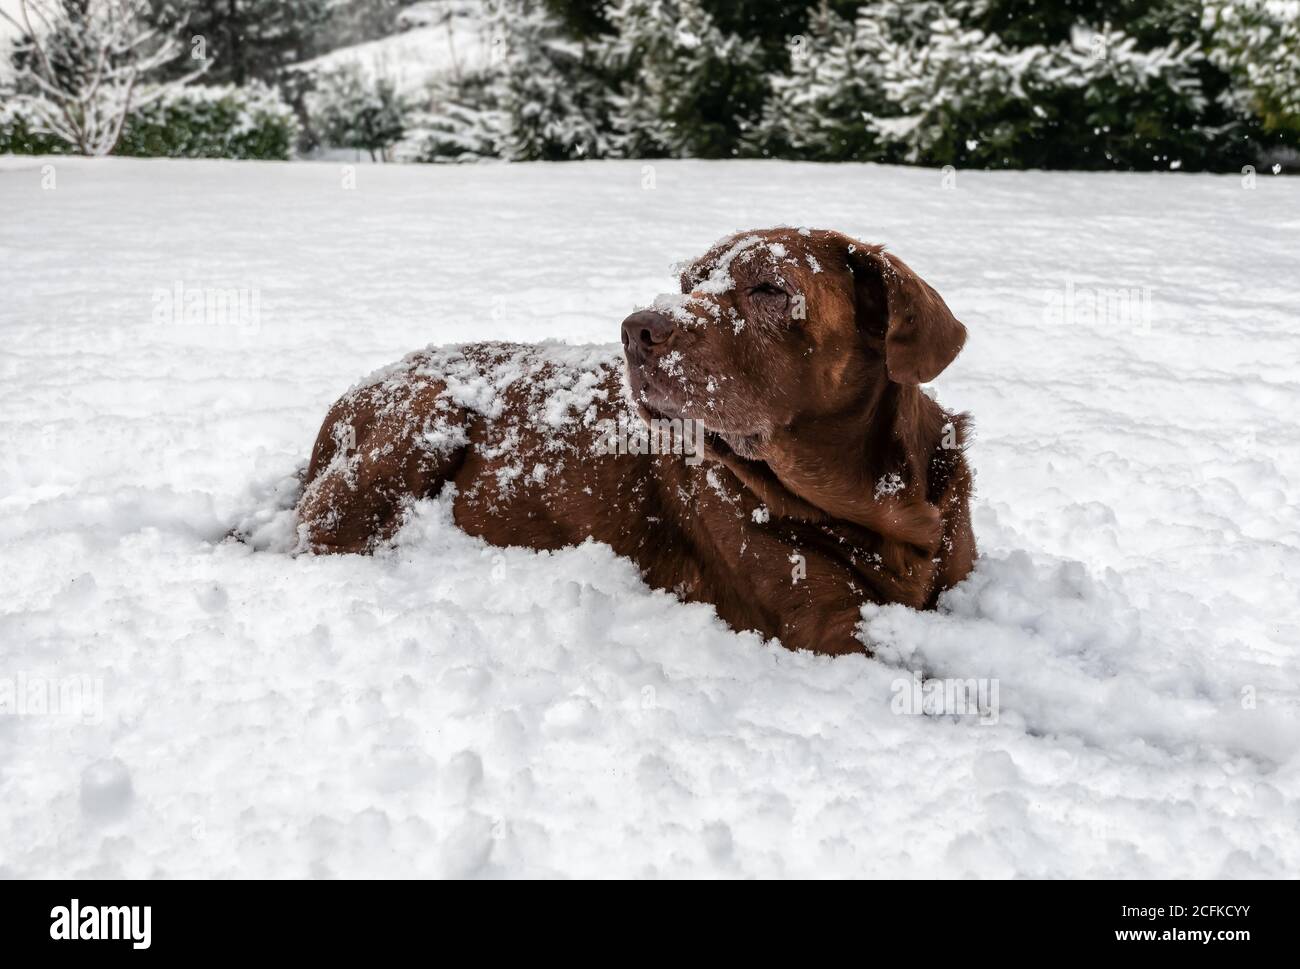 Alter Chocolate Labrador Retriever Hund liegt im Schnee unter dem Schneefall. Stockfoto